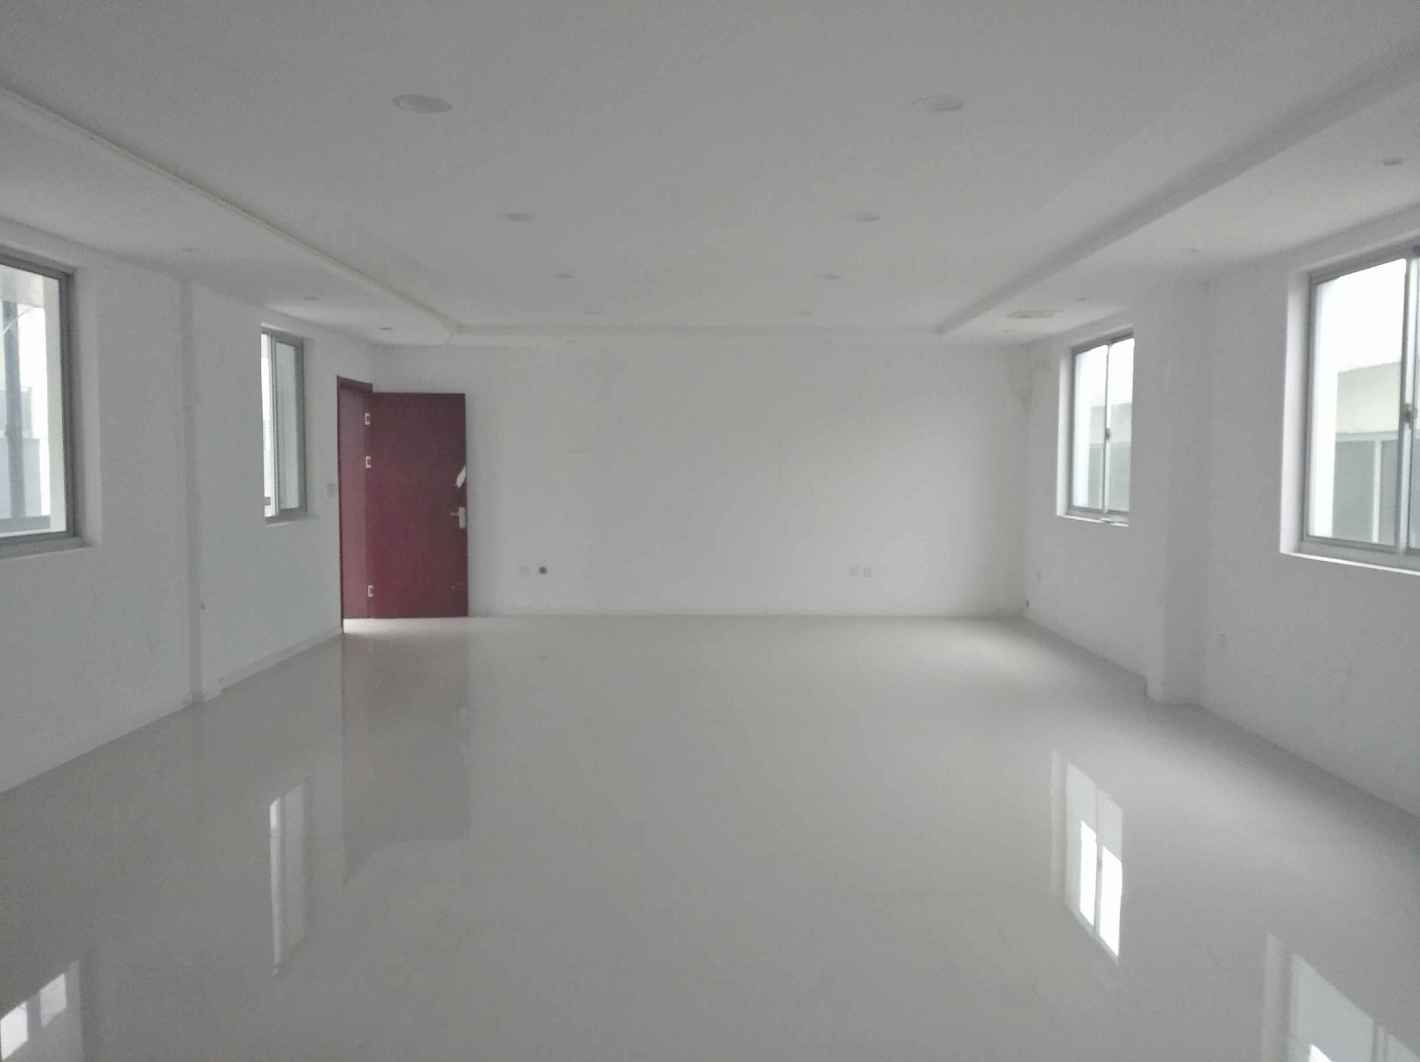 锦和越界1199124平米办公室出租-租金价格2.30元/m²/天